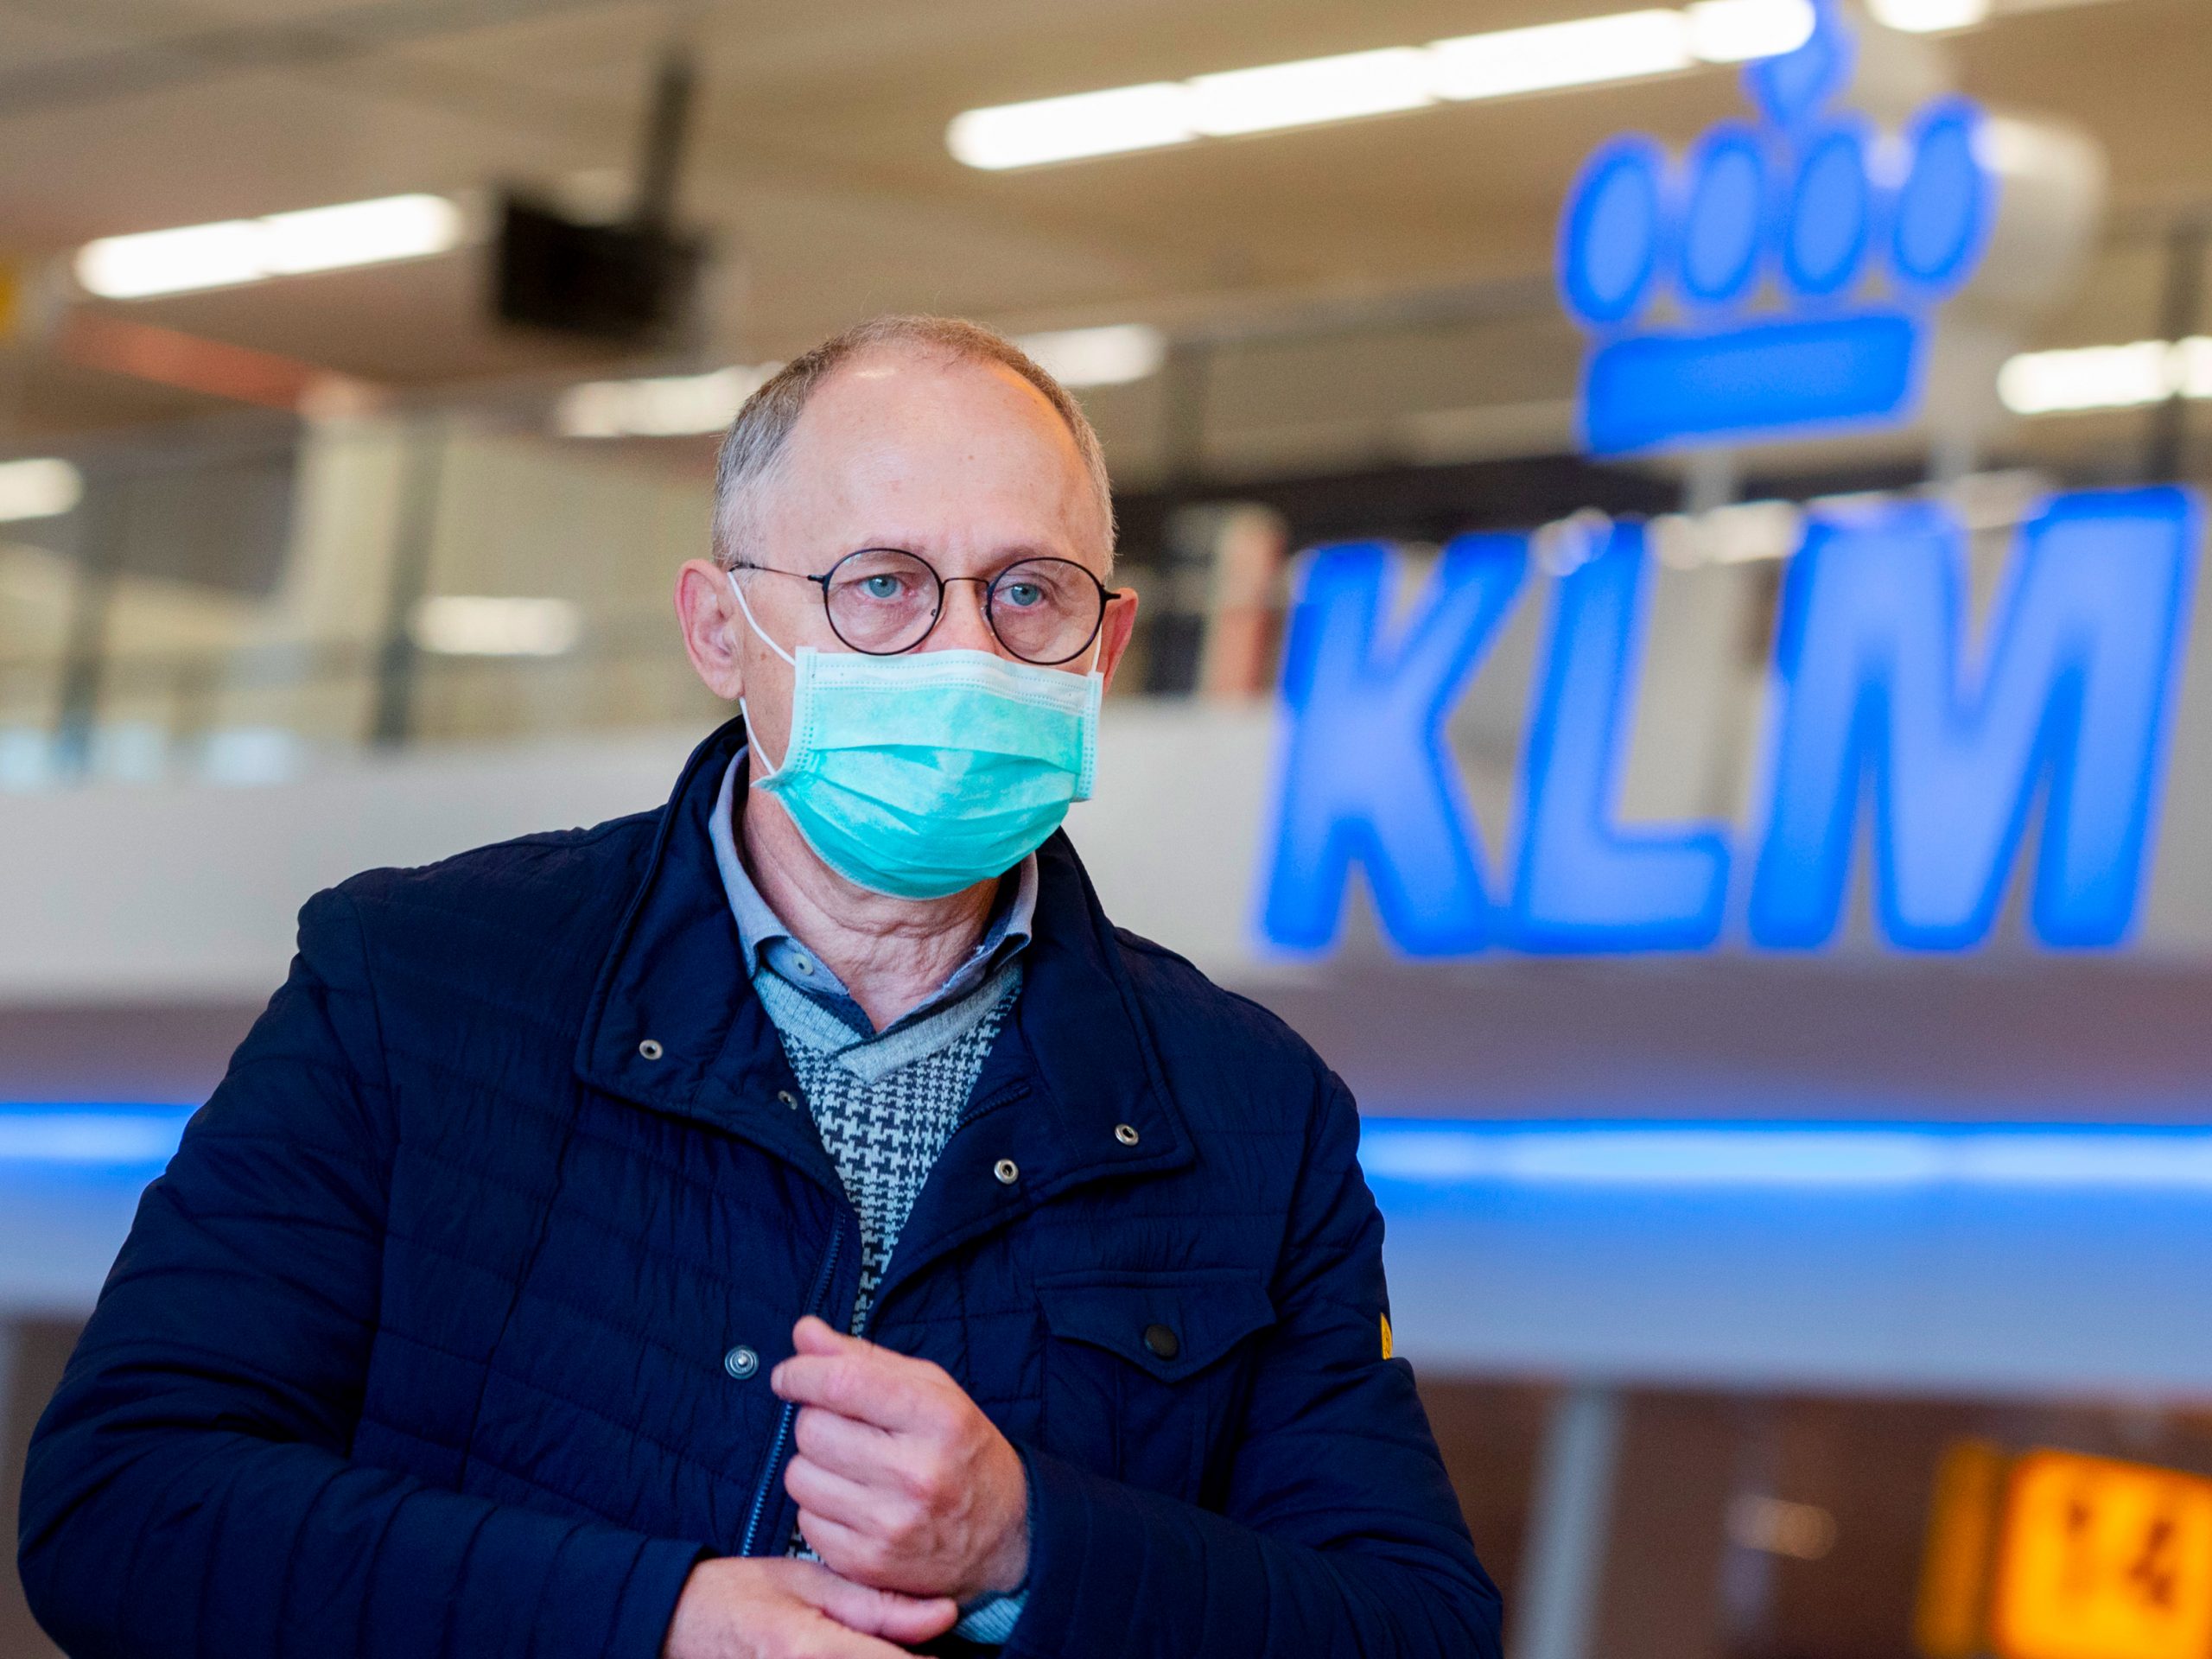 Reizigers met mondkapjes op luchthaven Schiphol. KLM stelt het dragen van mondkapjes verplicht.